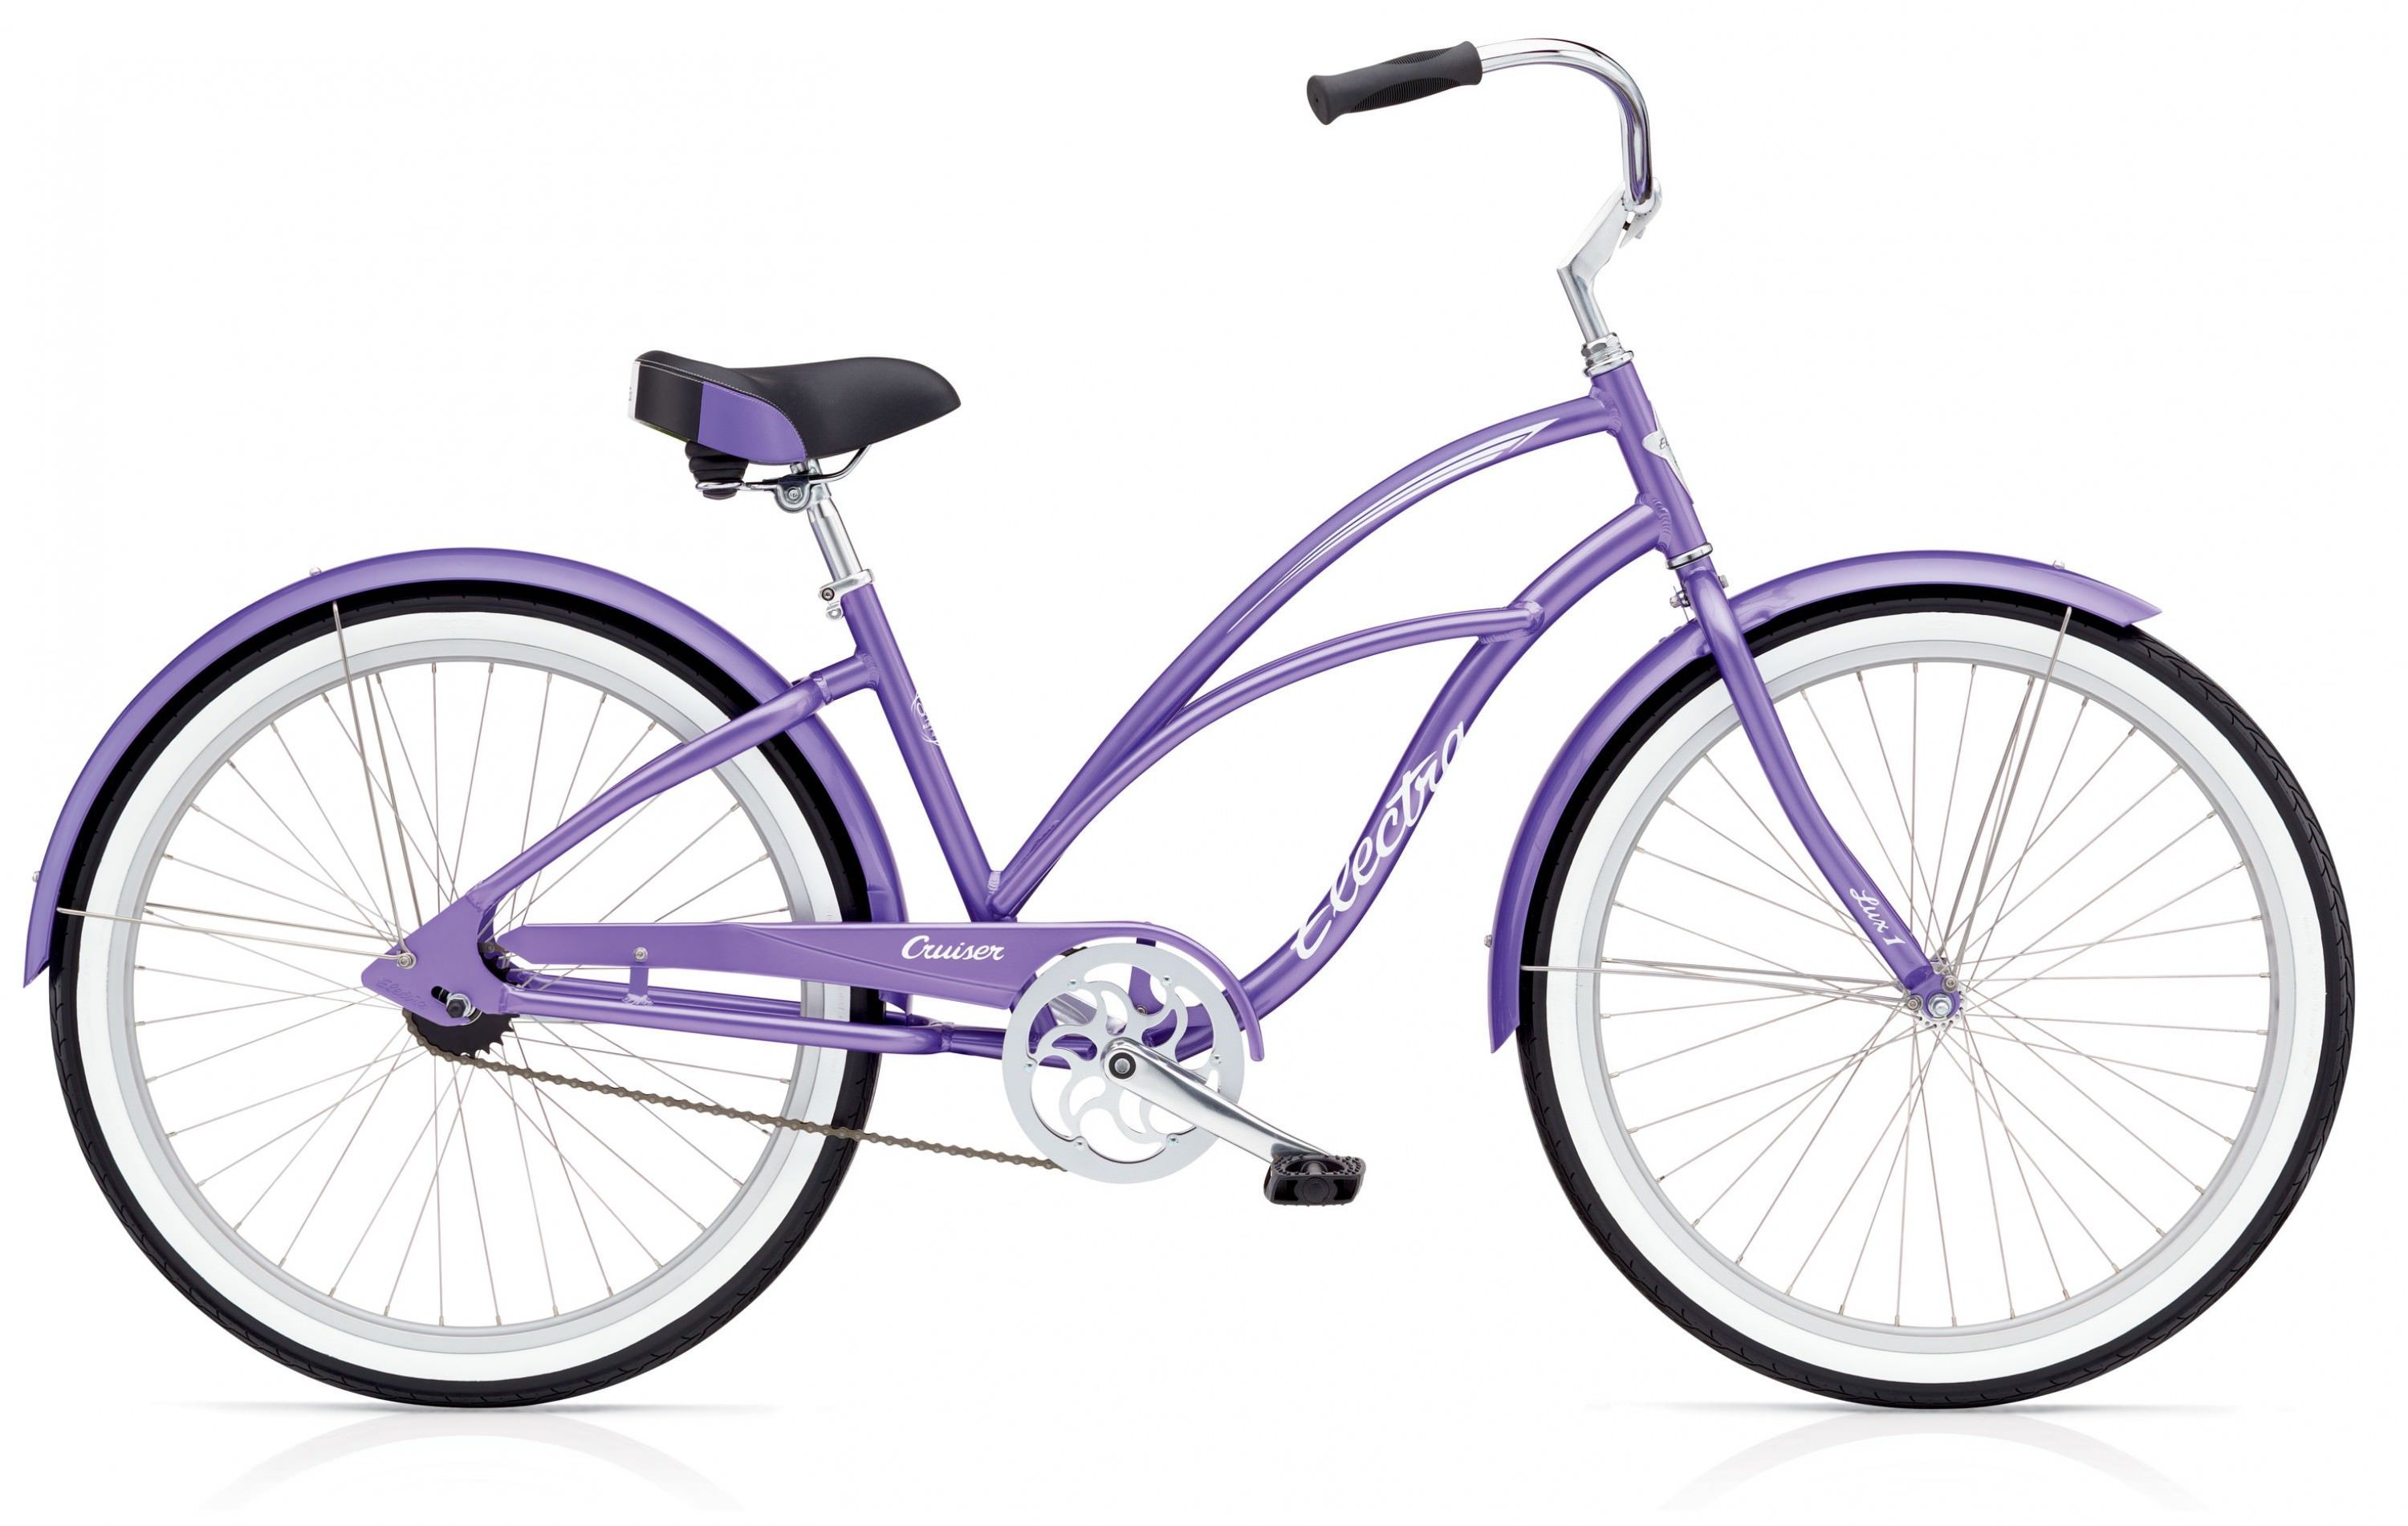  Велосипед Electra Cruiser Lux 1 Ladies 2017